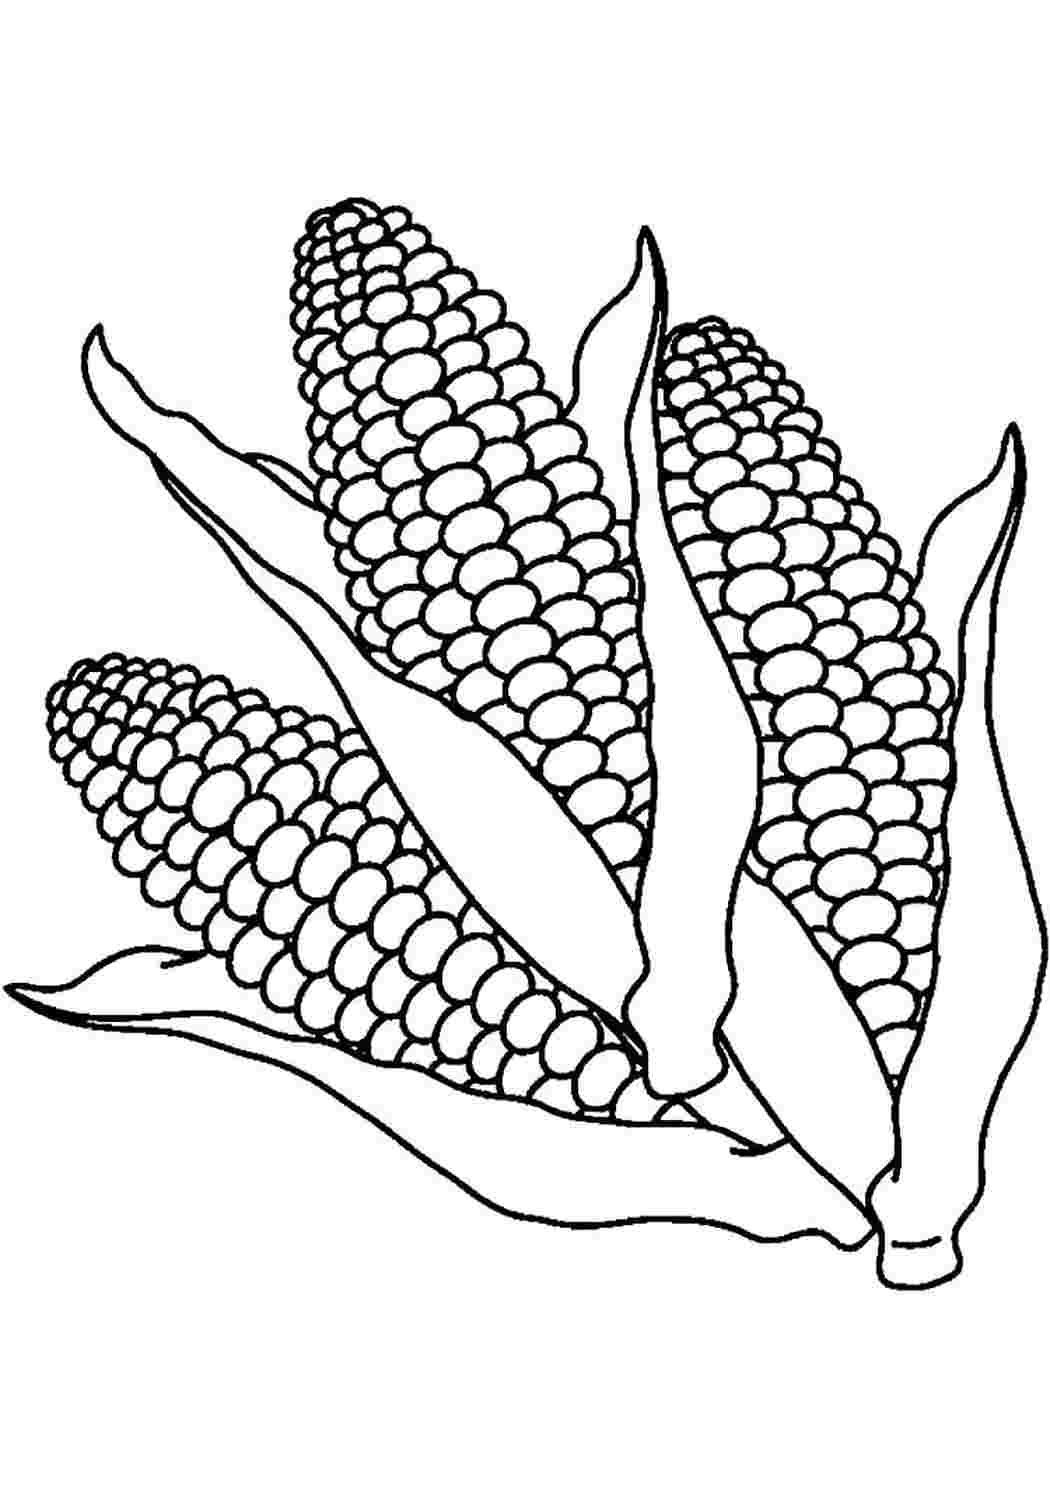 Раскраска овощи кукуруза